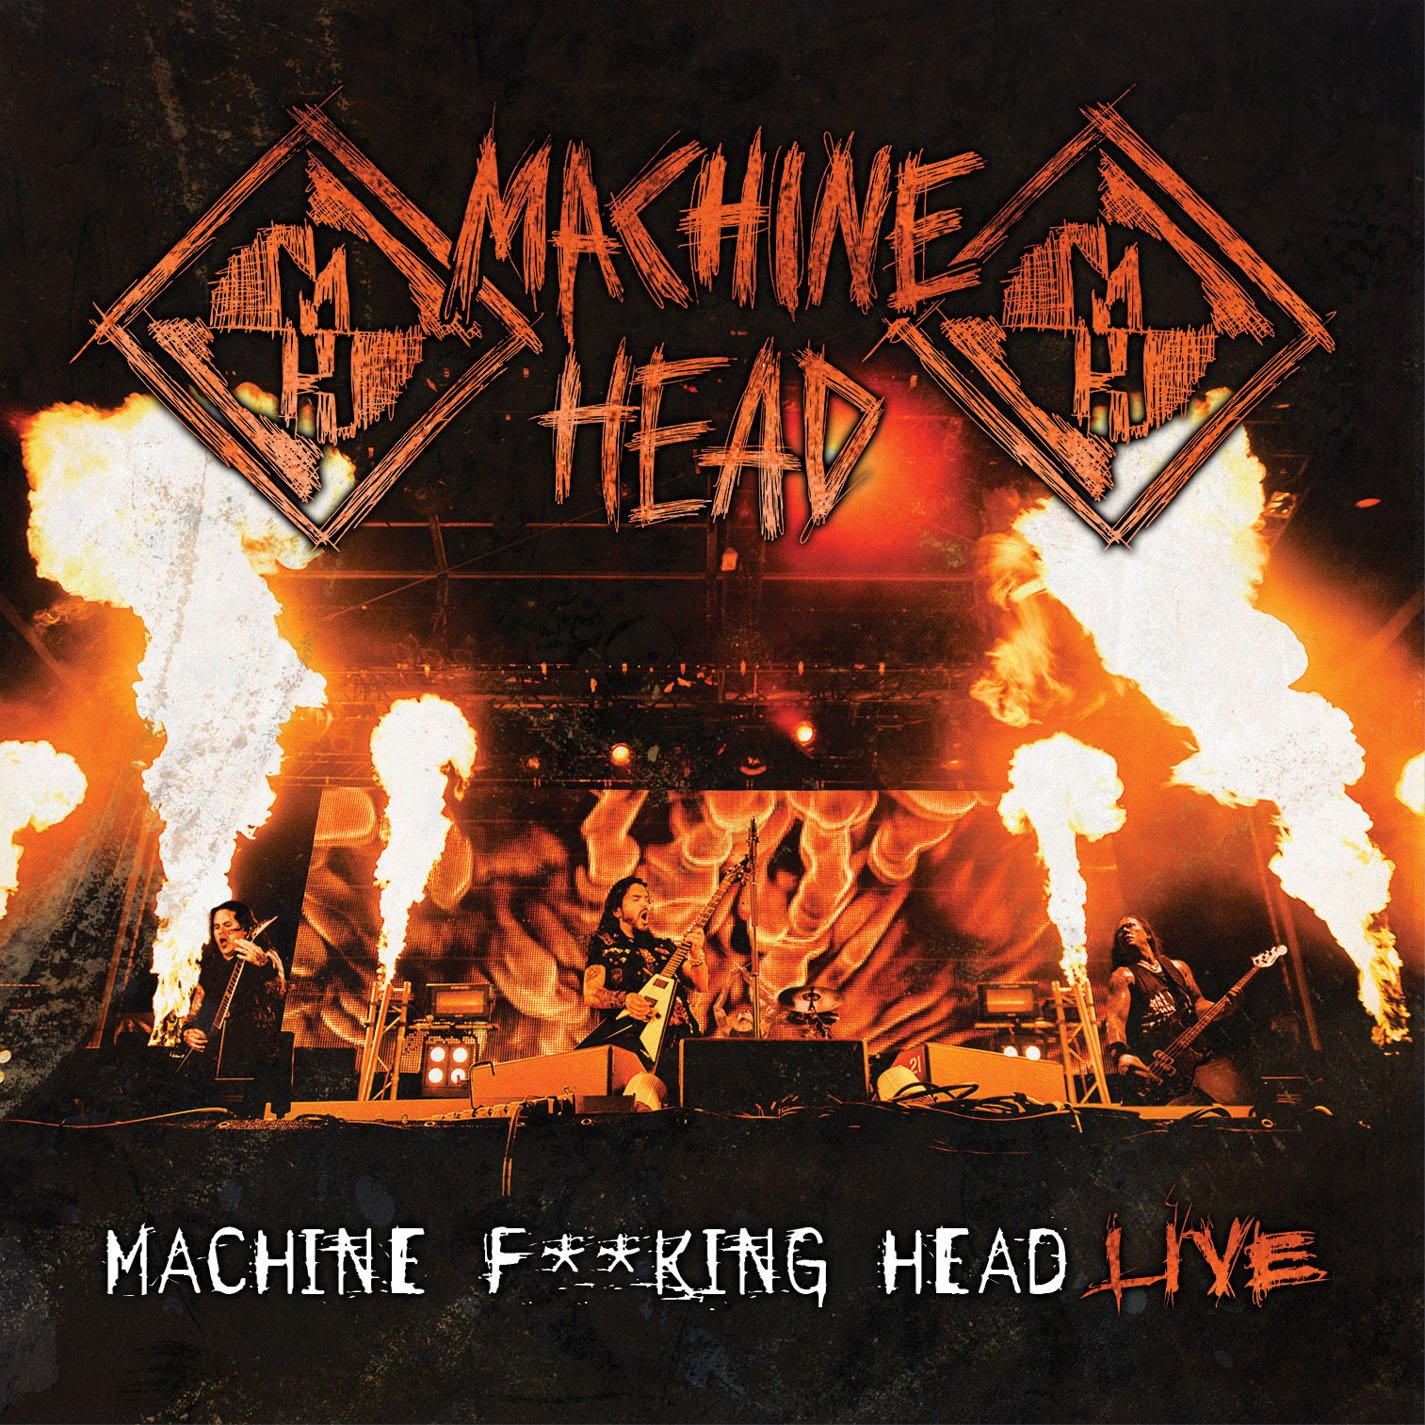 News Added Oct 22, 2012 Machine Head ist eine US-amerikanische Metal-Band aus Oakland, die häufig dem Subgenre Neo-Thrash zugeordnet wird. Die Band steht bei Roadrunner Records unter Vertrag und hat bislang sieben Studioalben veröffentlicht. Weltweit haben Machine Head mehr als 2,4 Millionen Tonträger verkauft. Im Jahre 2007 wurde die Band für den Grammy in der […]